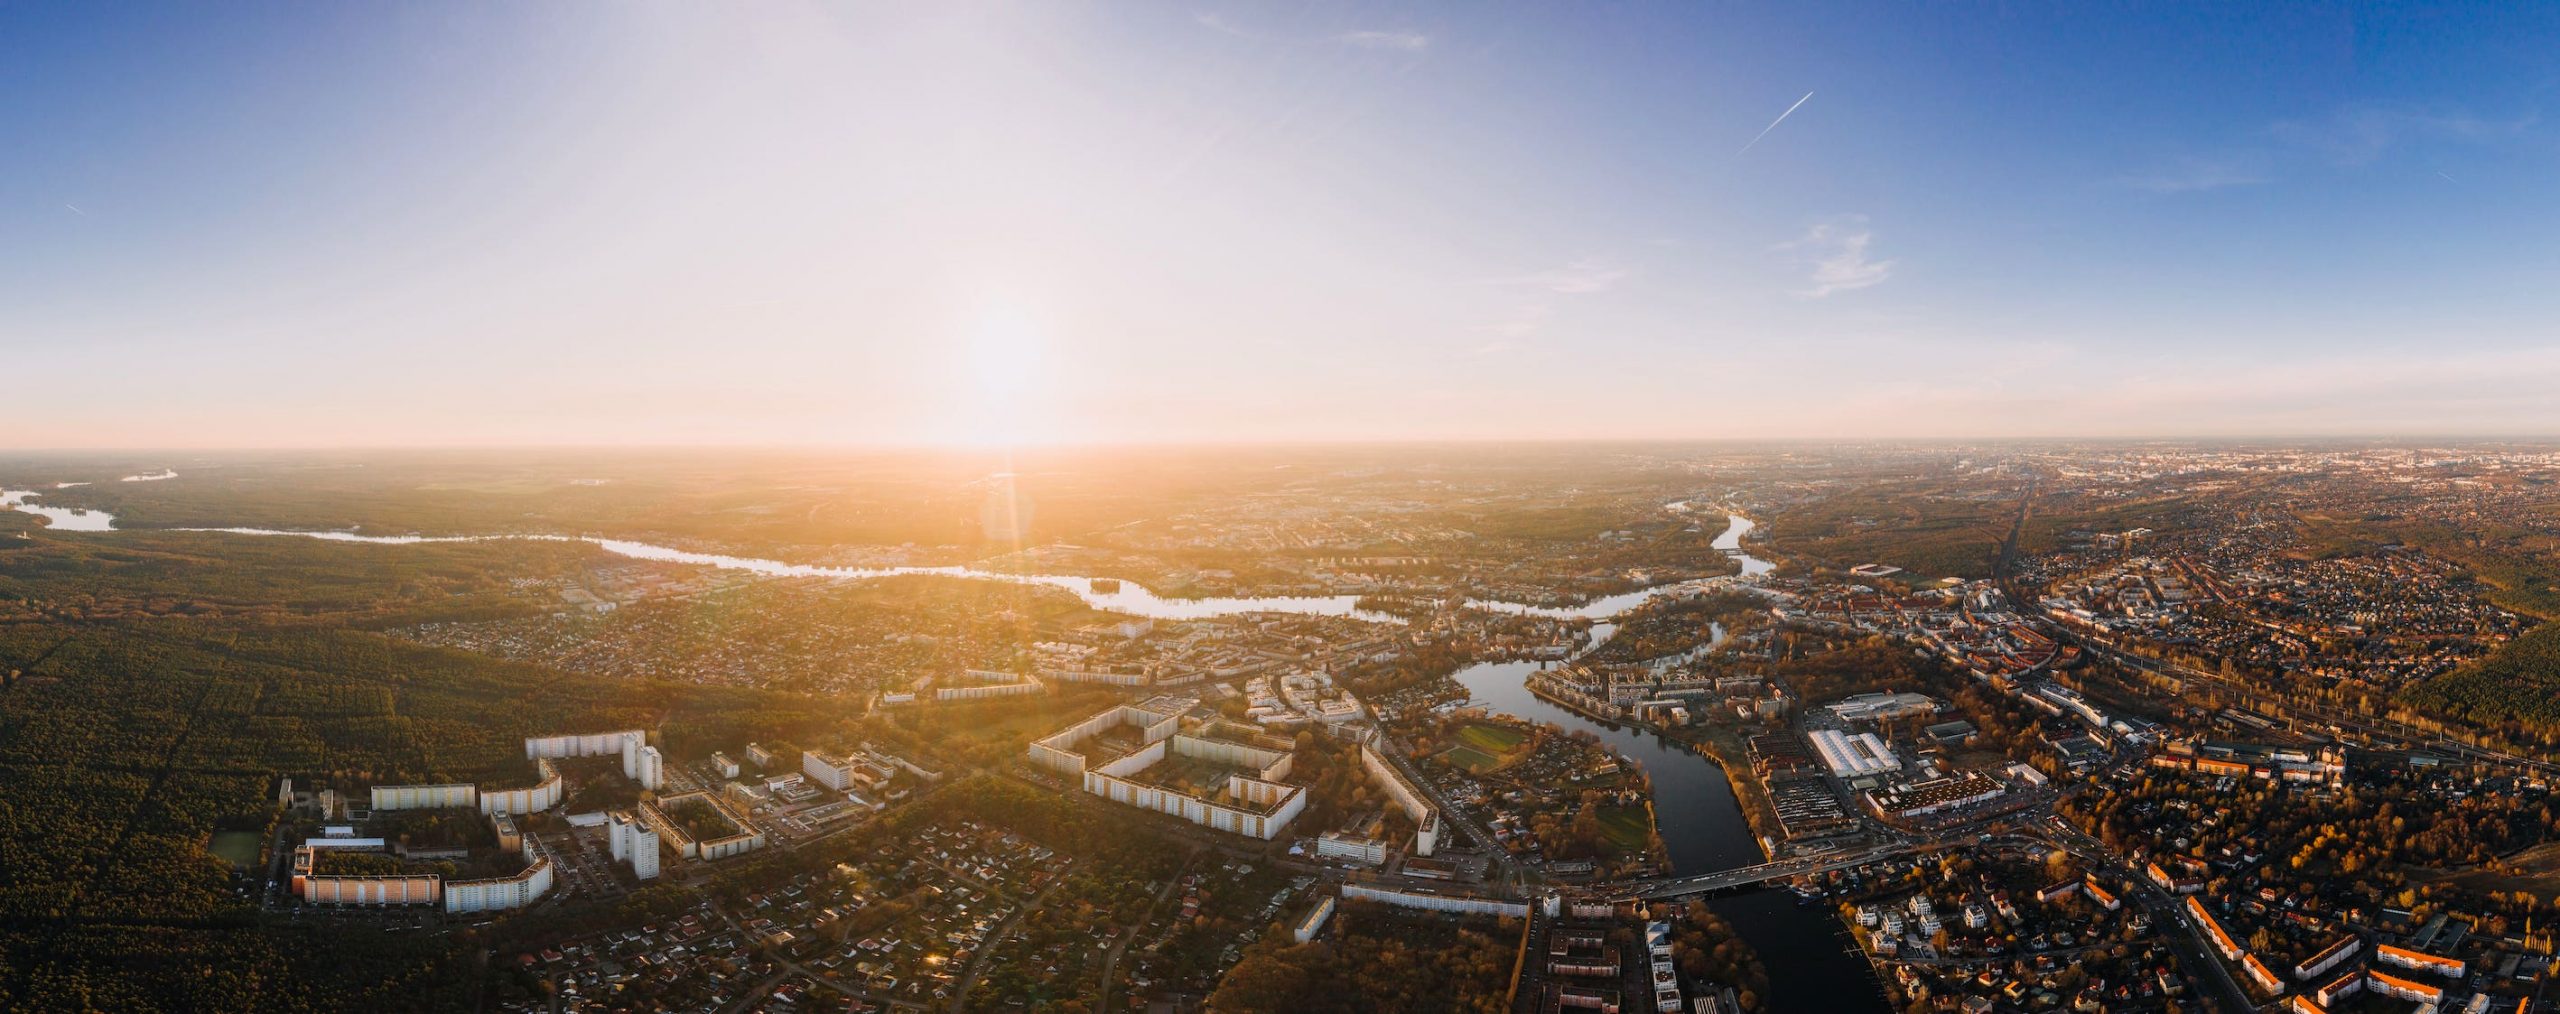 Dahme und Spree von oben im Sonnenaufgang, weite Teile Berlins, vor allem Köpenick und Umgebung